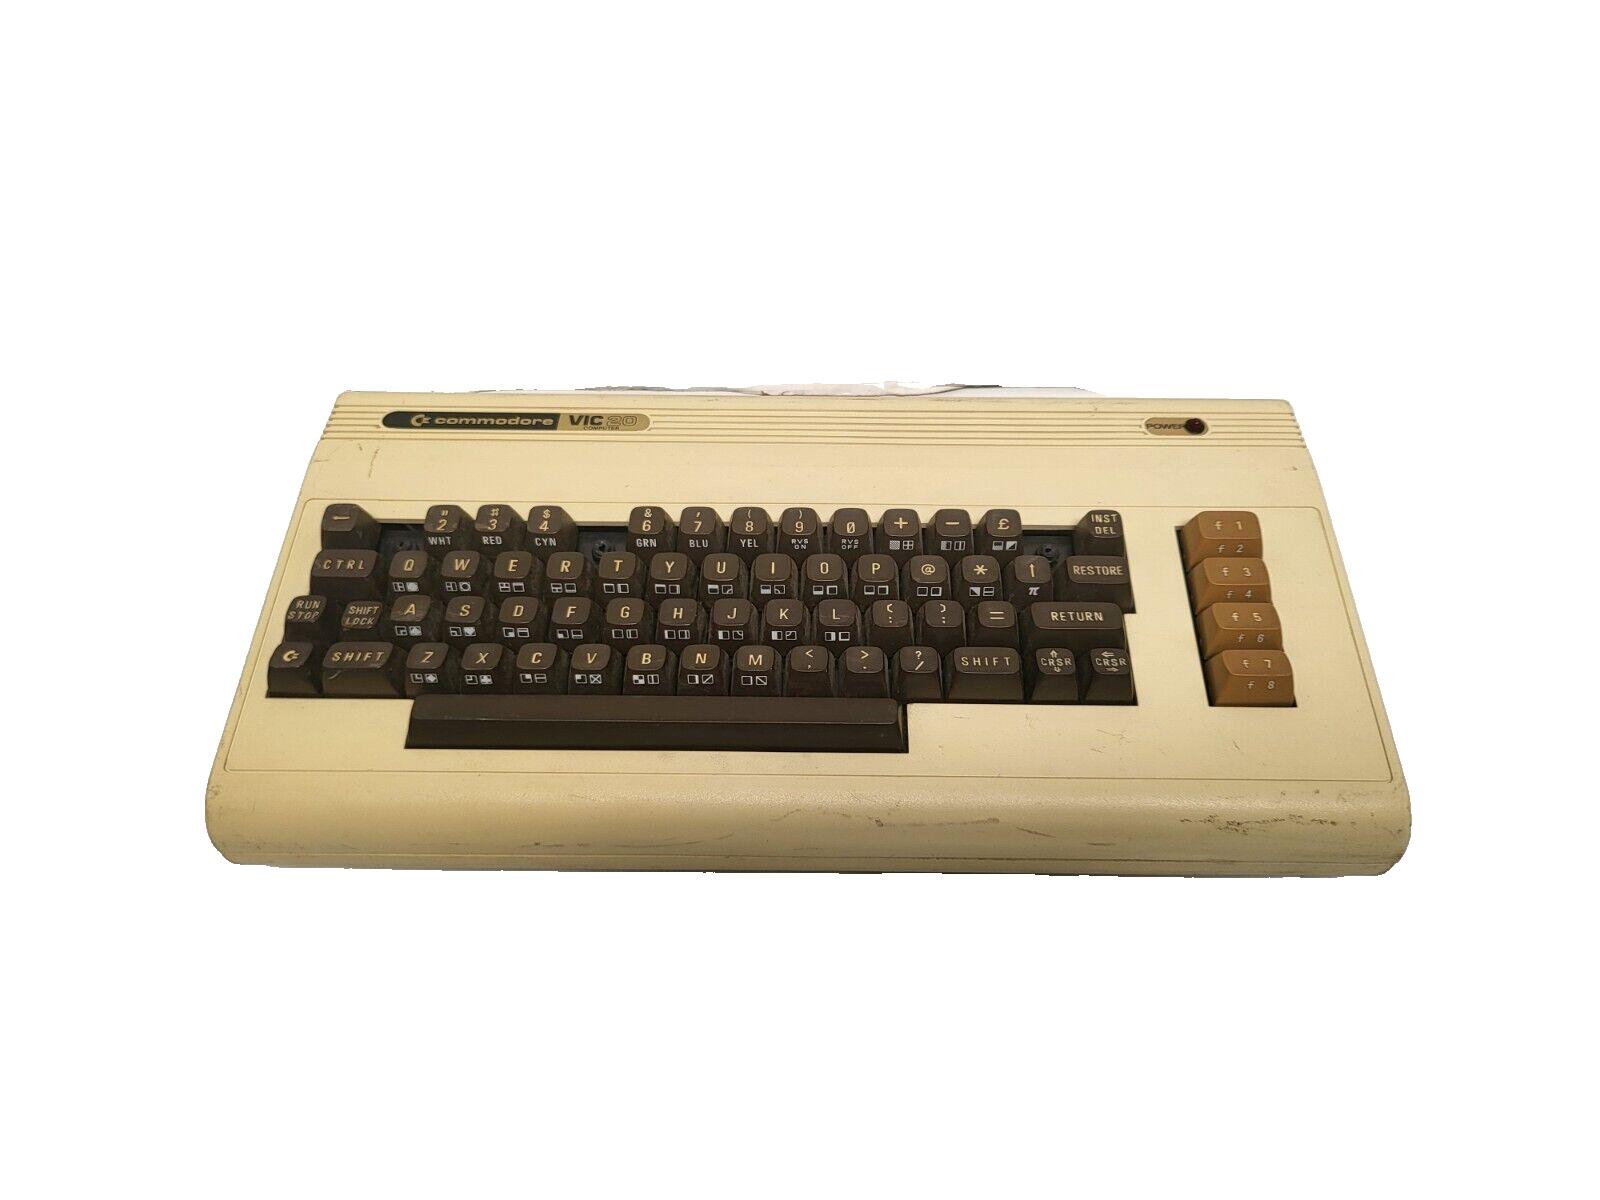 Rare Vintage Commodore VIC 20 Retro Personal Computer - VIC20 - Untested